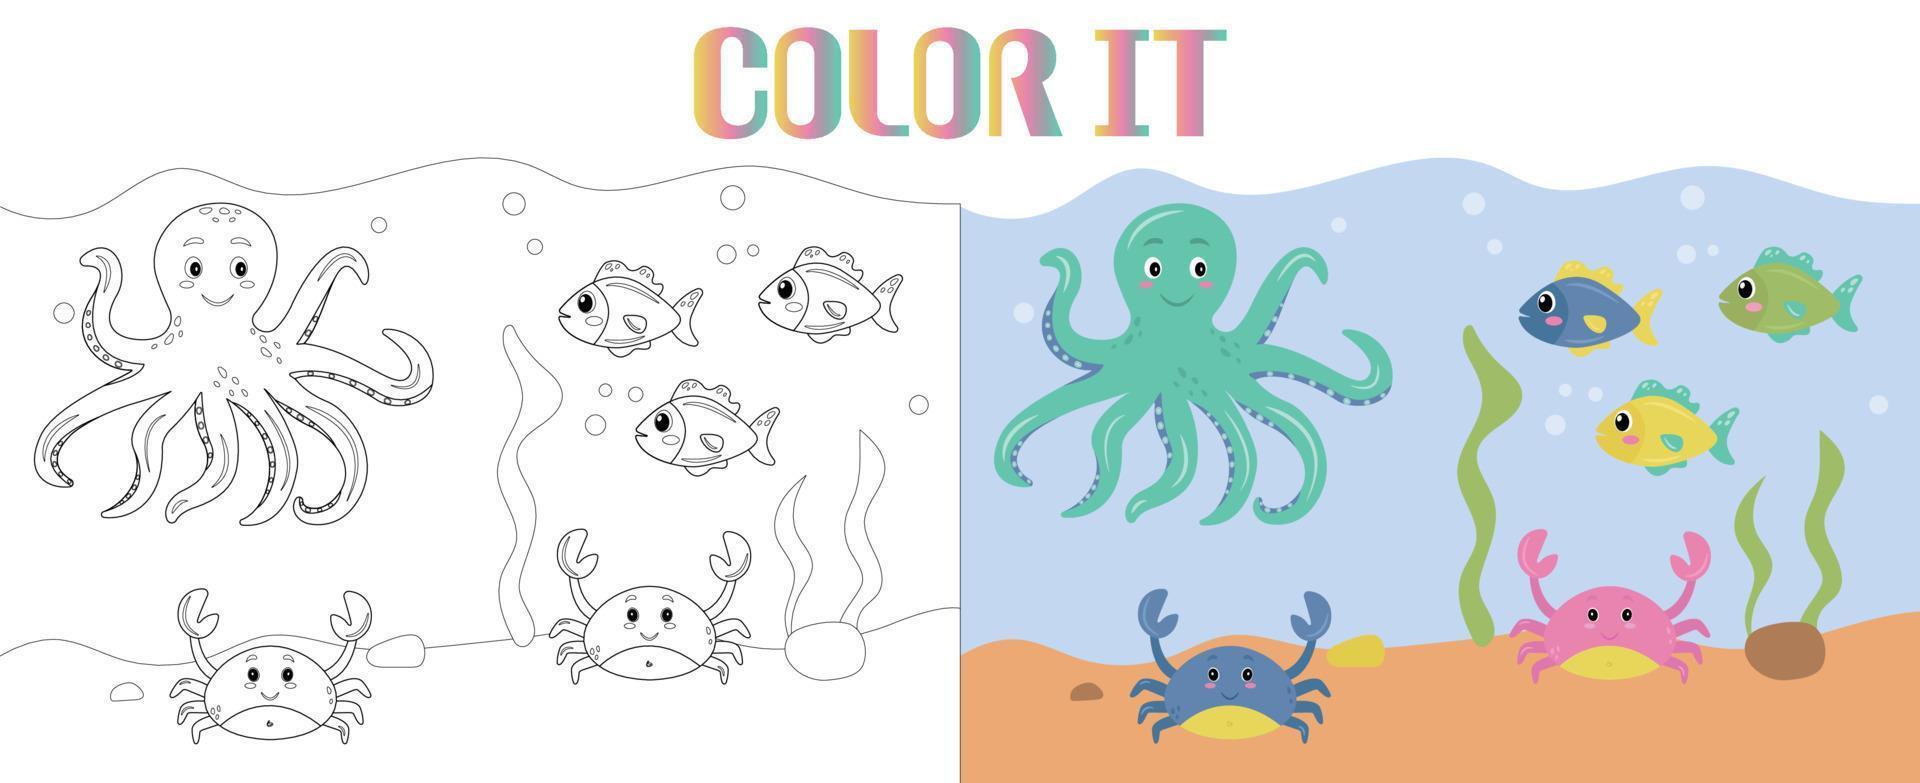 Vektorkarikatur von Meerestieren, Tintenfischen und Krabben mit bunten Fischen unter Wasser. glücklich lächelnde Meerestiere. Malbuch oder Seite für Kinder vektor